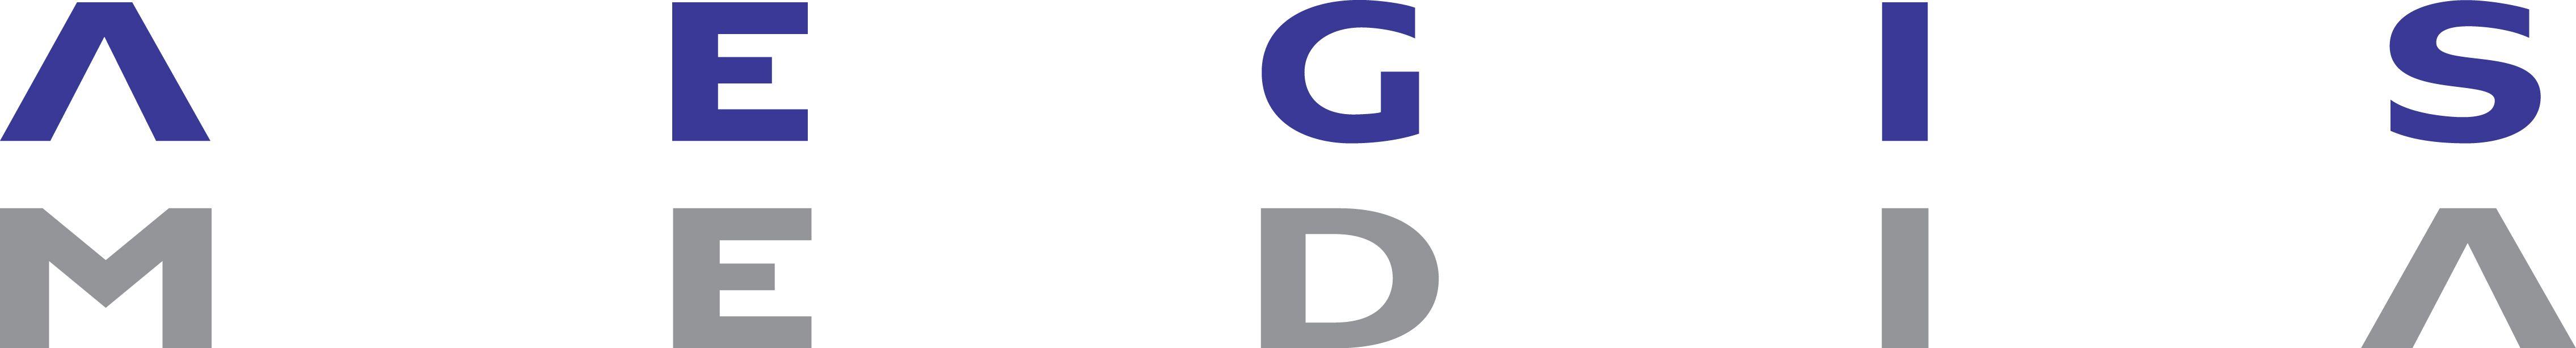 aegis media logo